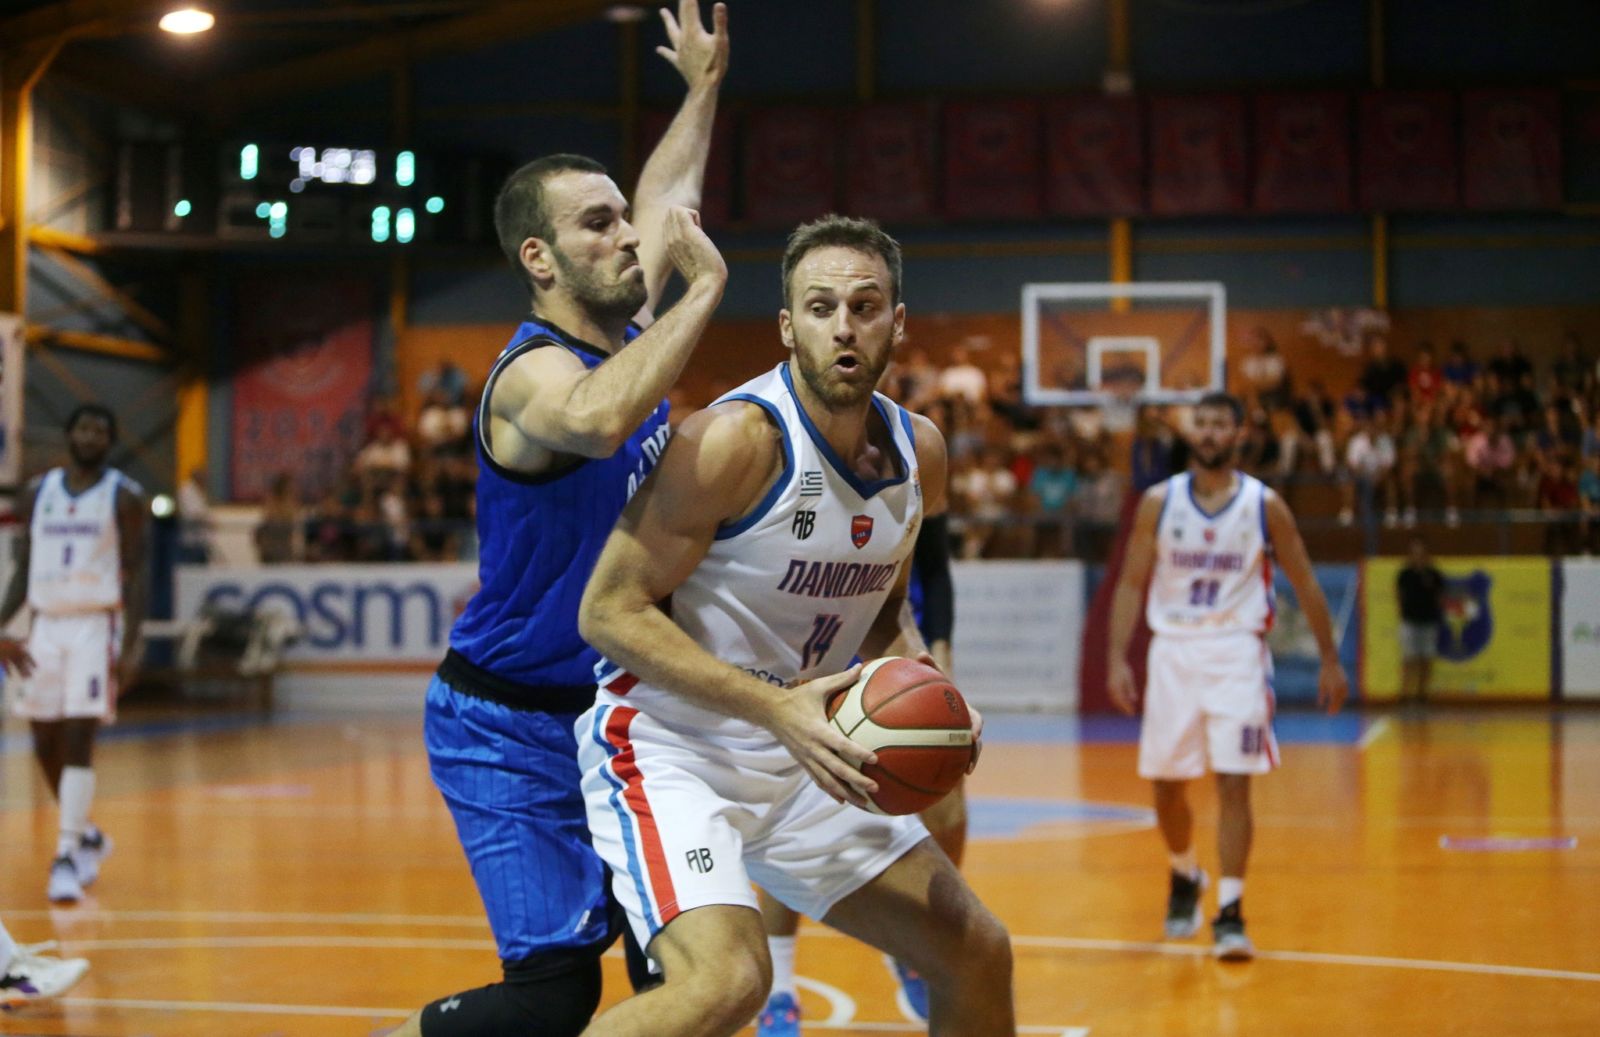 Κακλαμανάκης στο basketblog.gr: “Ήρθα στον Πανιώνιο για το όραμα που υπάρχει, θα είμαστε έτοιμοι όταν πρέπει”